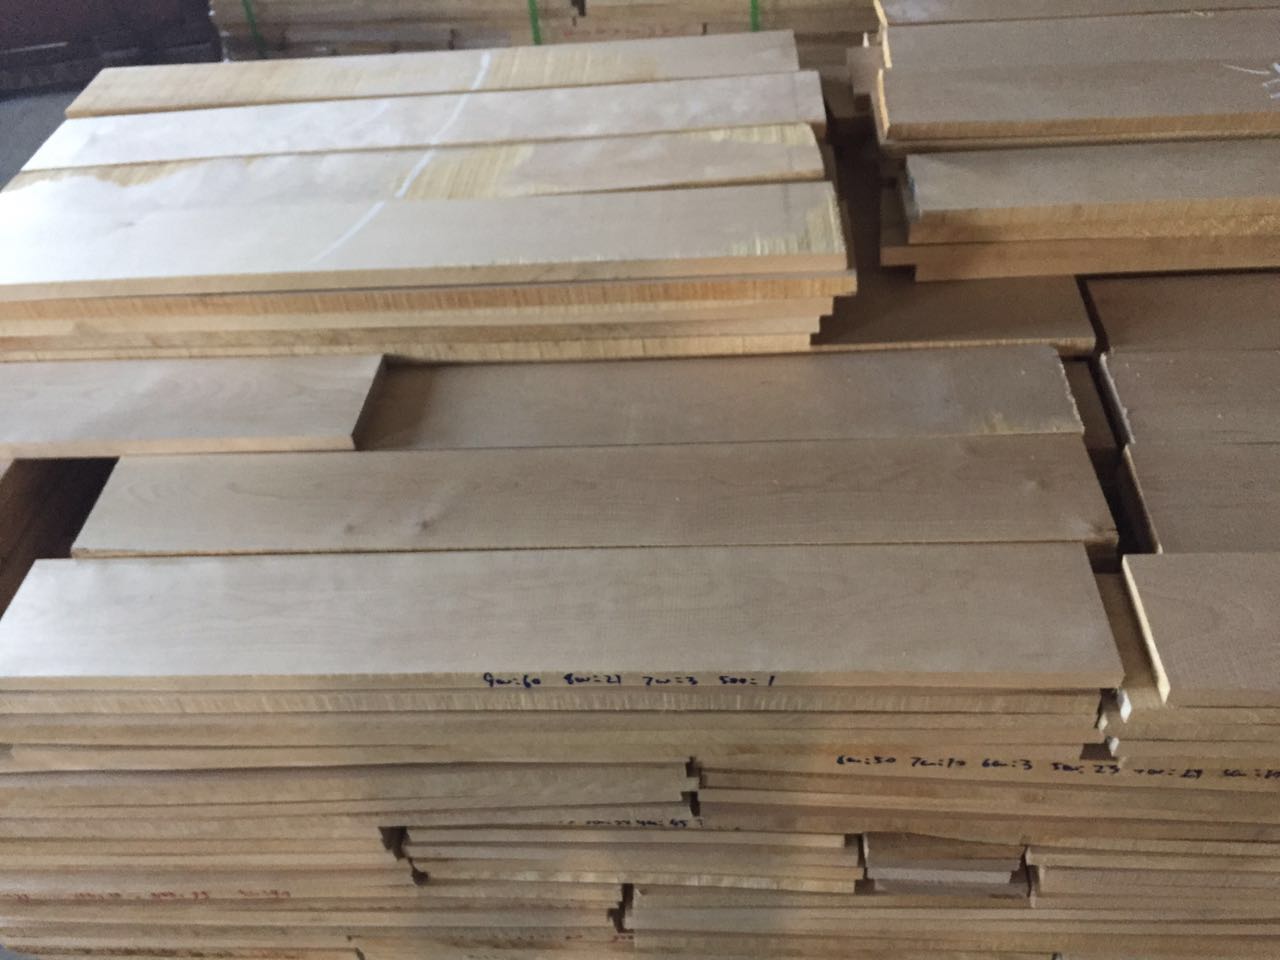 绥芬河木业新货优质云杉板材 绥芬河云杉板材质量好价格优